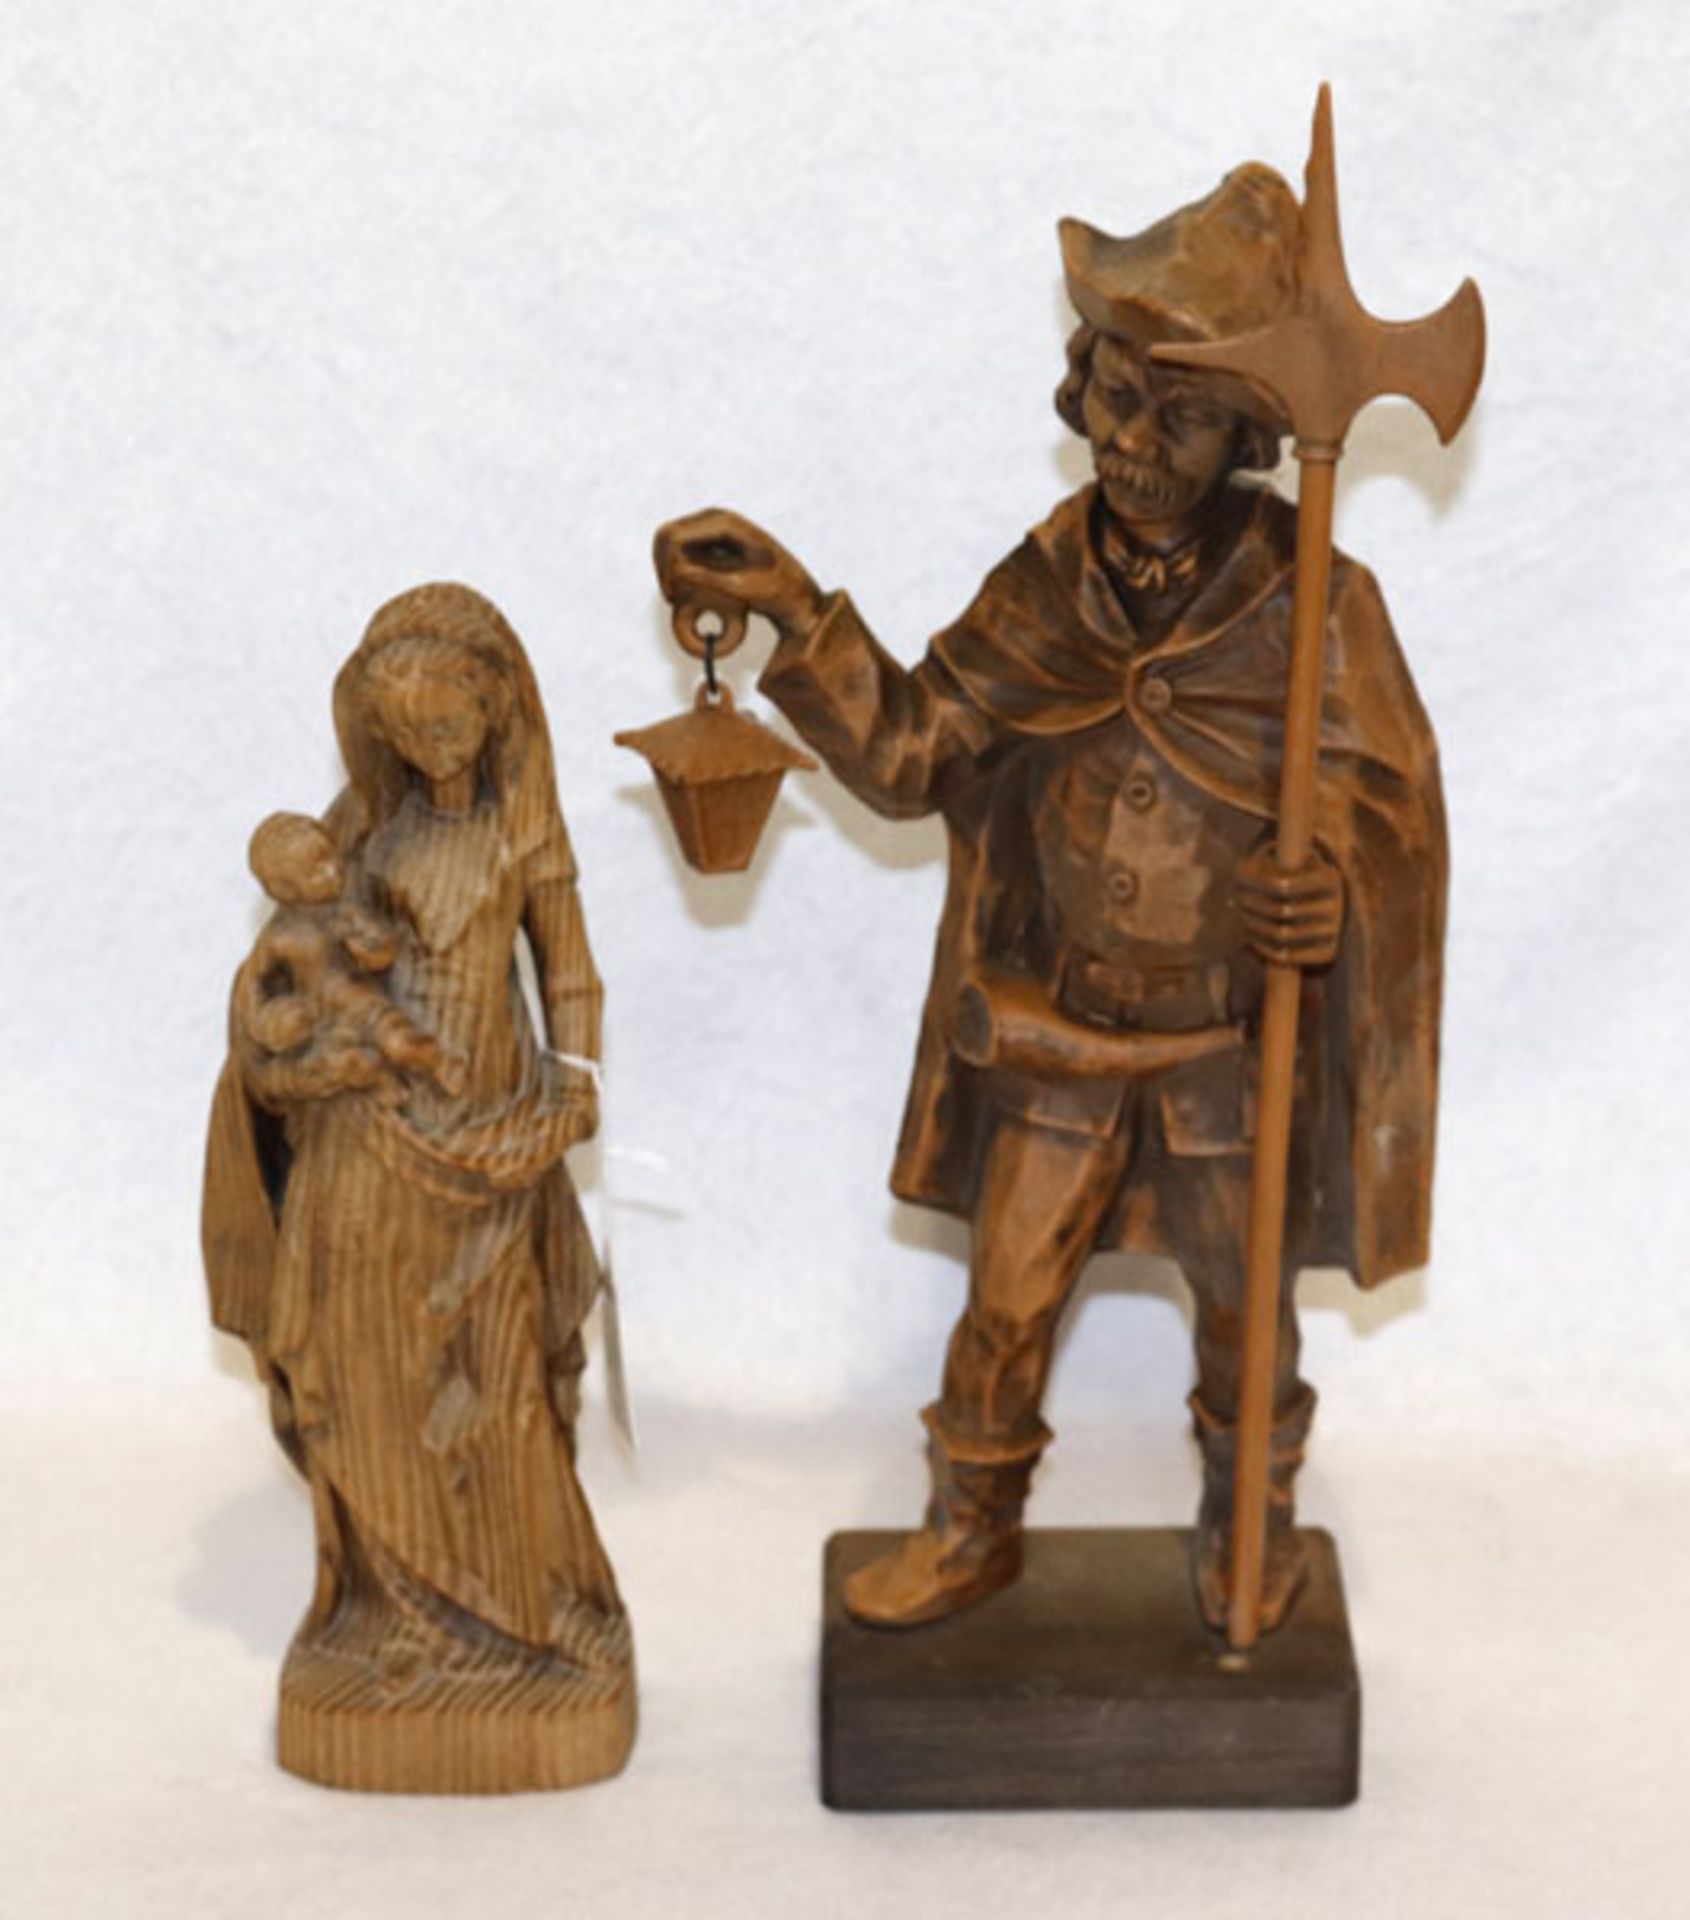 Holz Figurenskulptur 'Maria mit Kind', gebeizt, H 29 cm, und Gußfigur 'Nachtwächter', H 42 cm